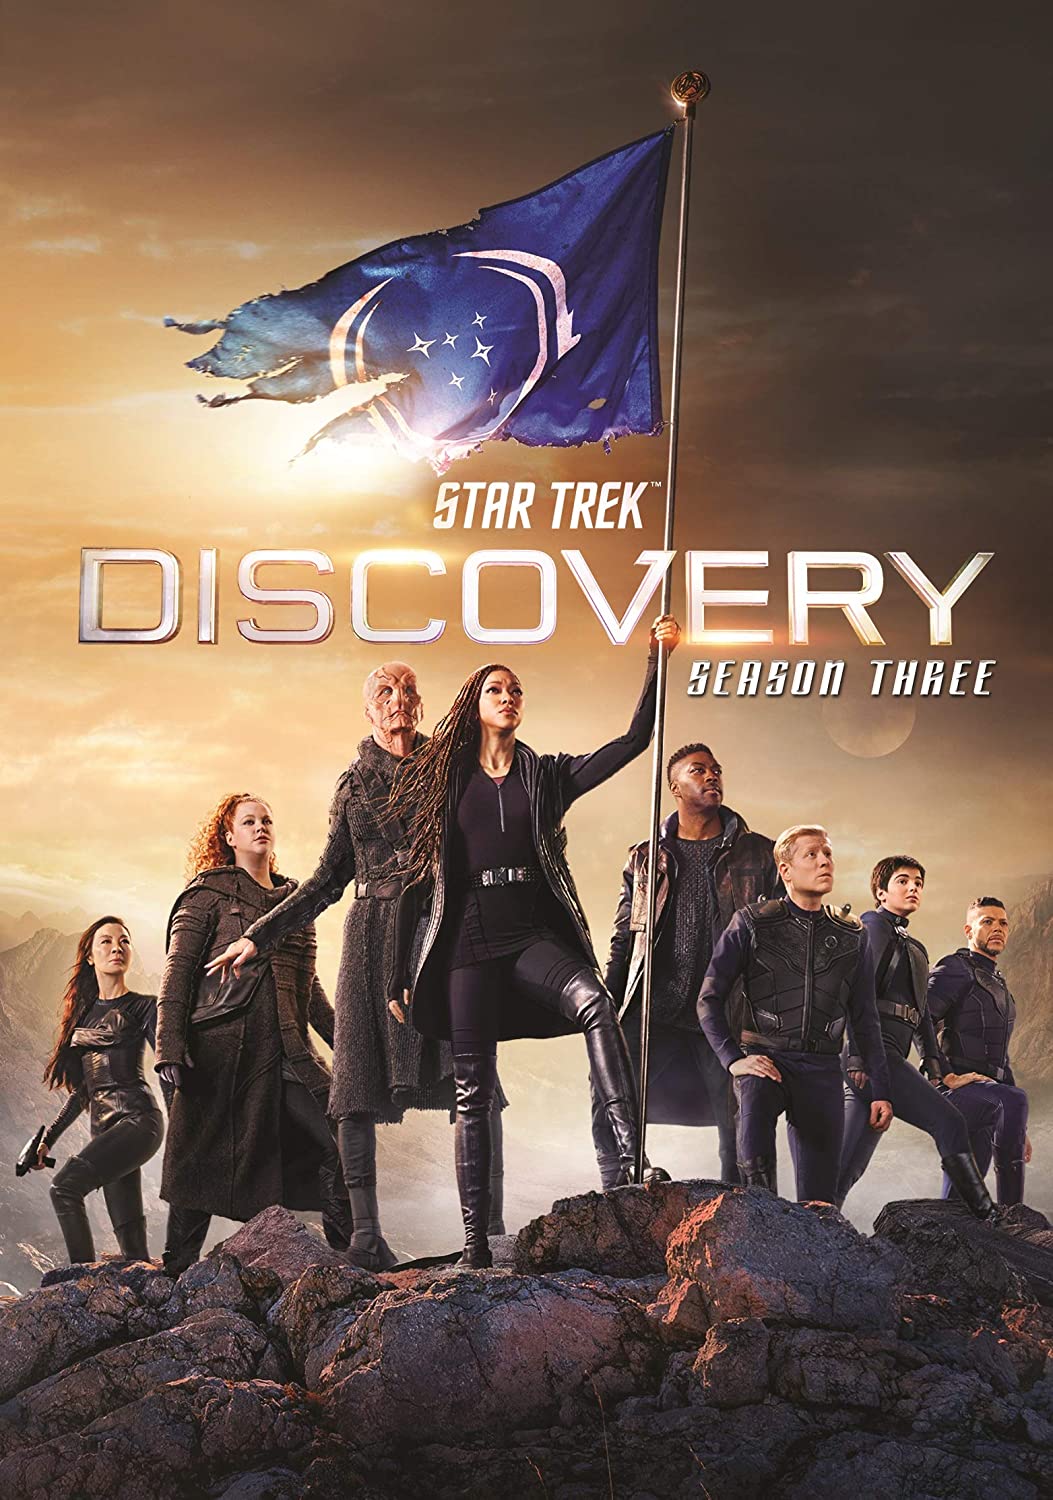 ดูหนังออนไลน์ฟรี Star Trek Discovery Season 3 EP12 สตาร์ เทรค ดิสคัฟเวอรี่ ซีซั่นที่ 3 ตอนที่ 12